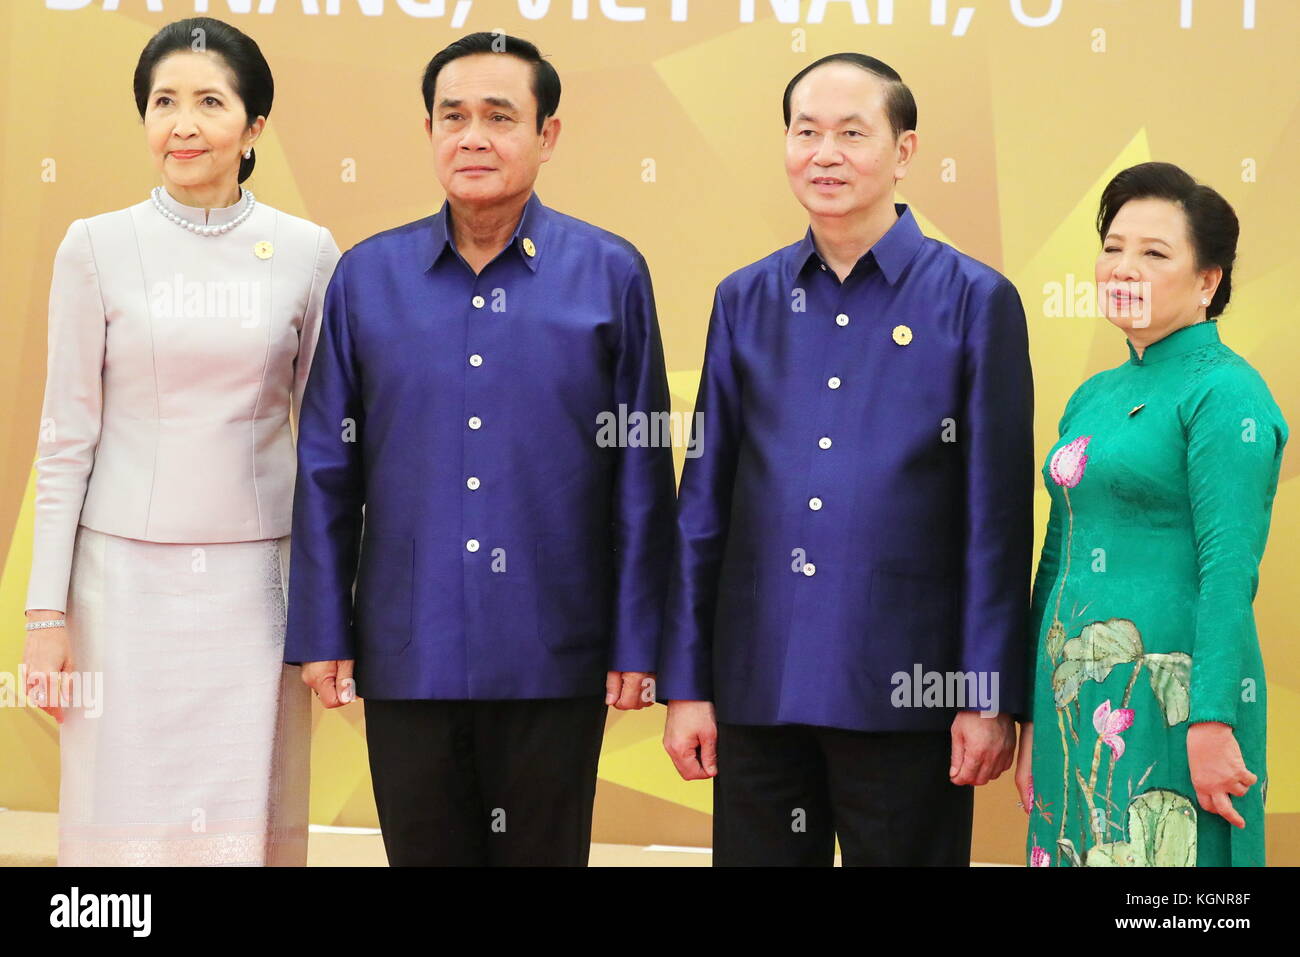 da-nang-vietnam-10-nov-2017-thailands-premierminister-prayut-chan-o-cha-2-l-mit-frau-naraporn-chan-ocha-r-und-vietnams-prasident-tran-dai-quang-2-r-mit-frau-nguyen-thi-hien-r-fur-ein-foto-auf-die-2017-asia-pacific-economic-cooperation-apec-gipfel-darstellen-credit-mikhail-klimentyevrussischen-prasidentschaftswahlen-presse-und-informationsamttassalamy-leben-nachrichten-kgnr8f.jpg